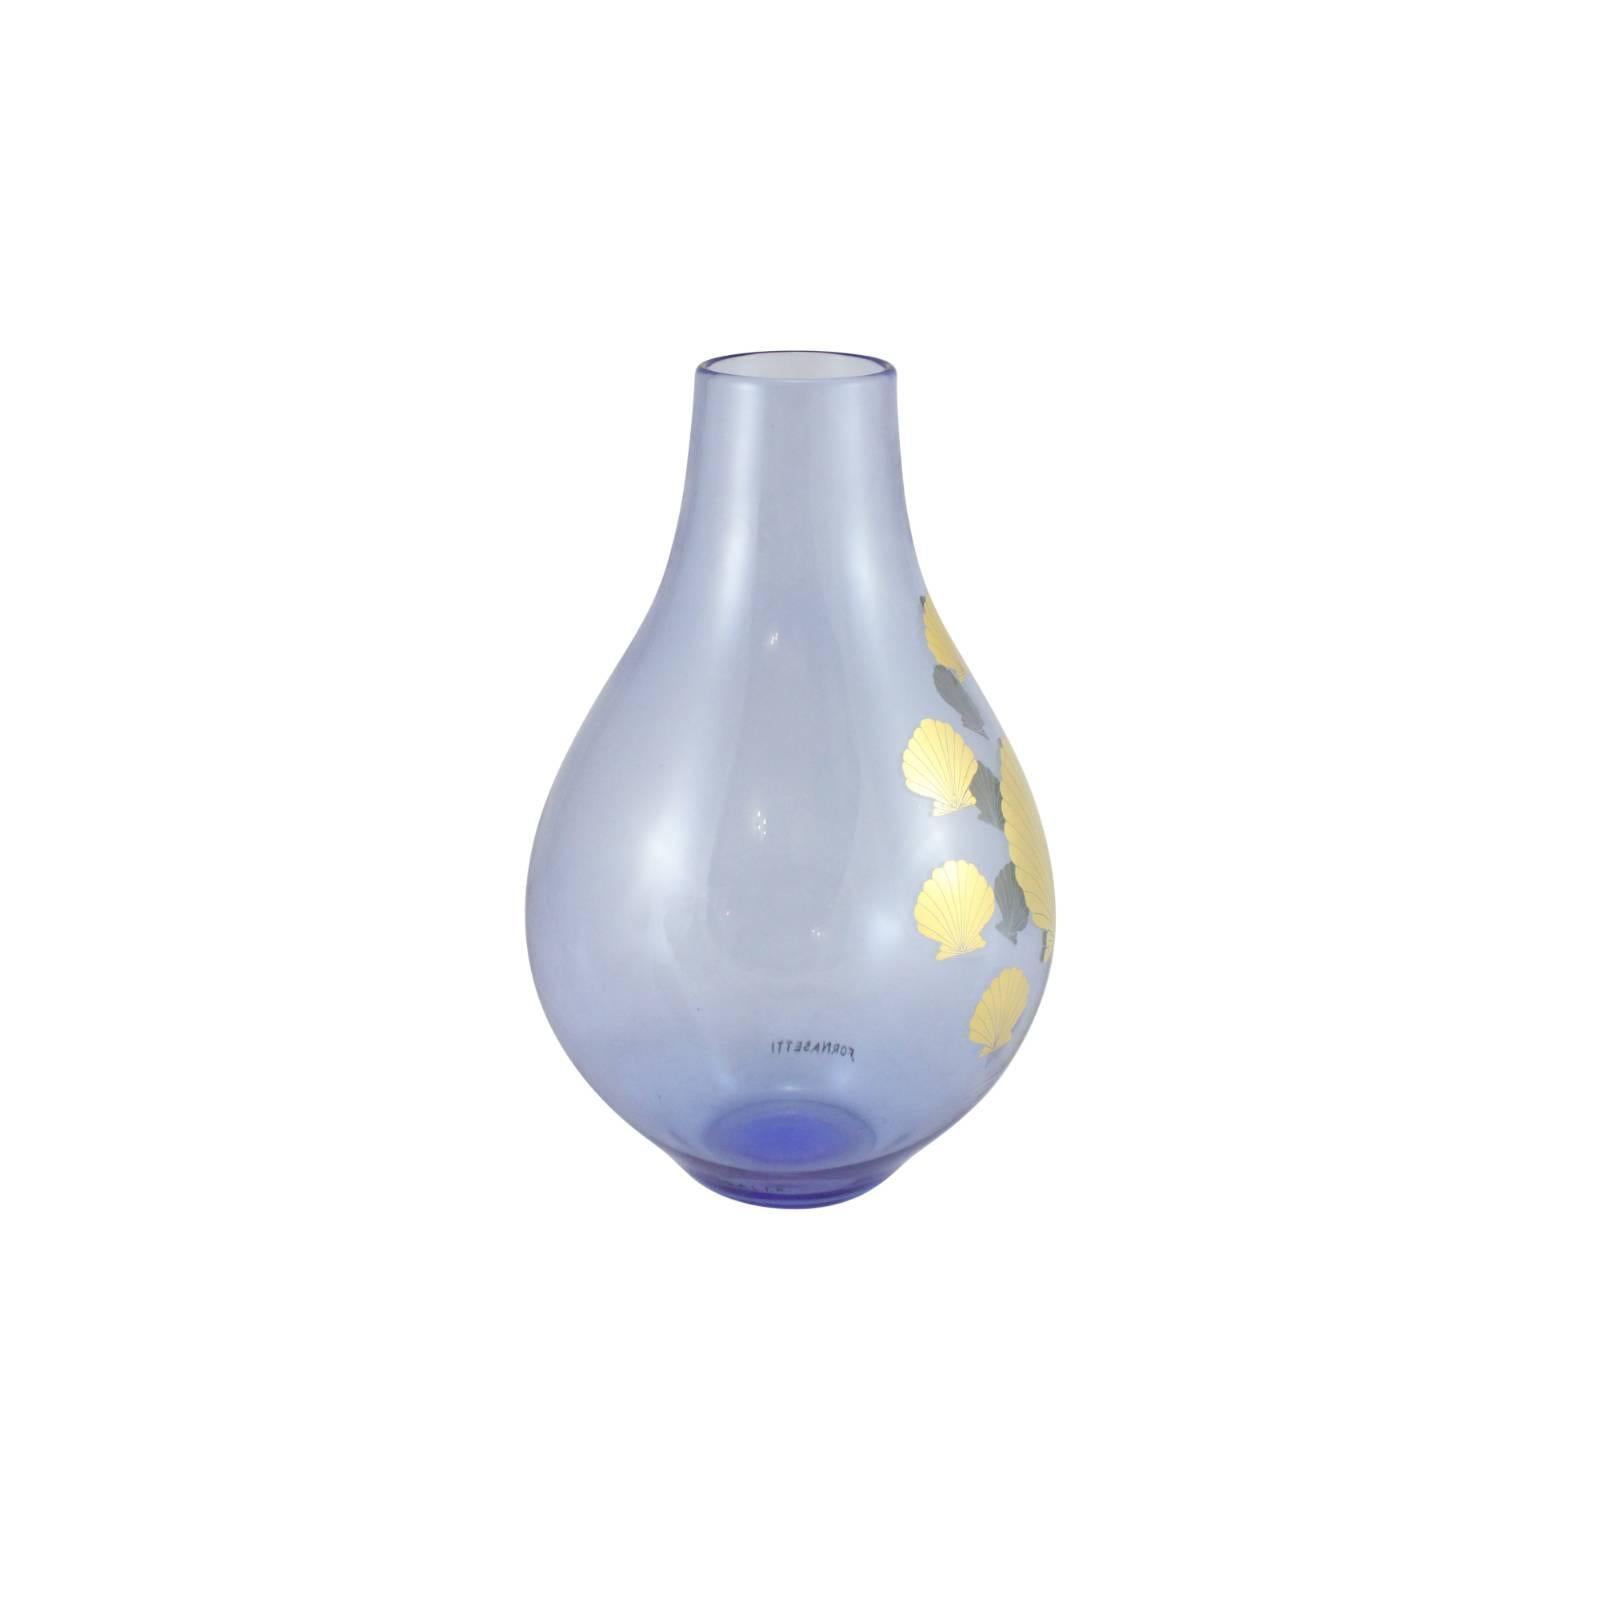 Italian Rare Glass Vase 'Conchiglie' by Piero Fornasetti For Sale